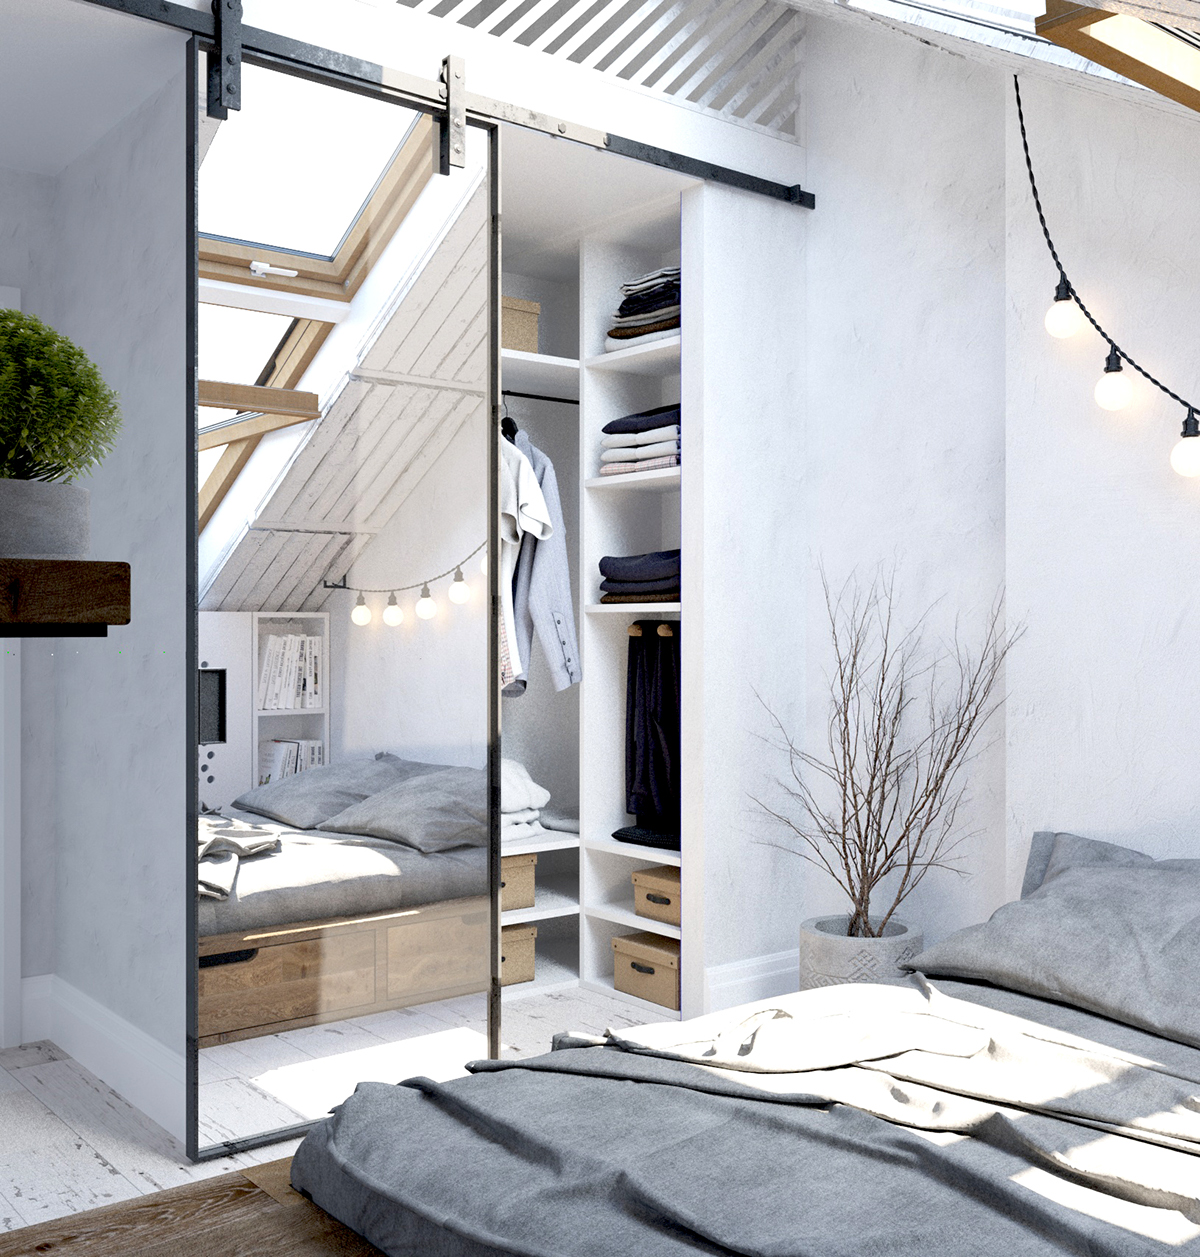 Interior mansard Scandinavian bedroom